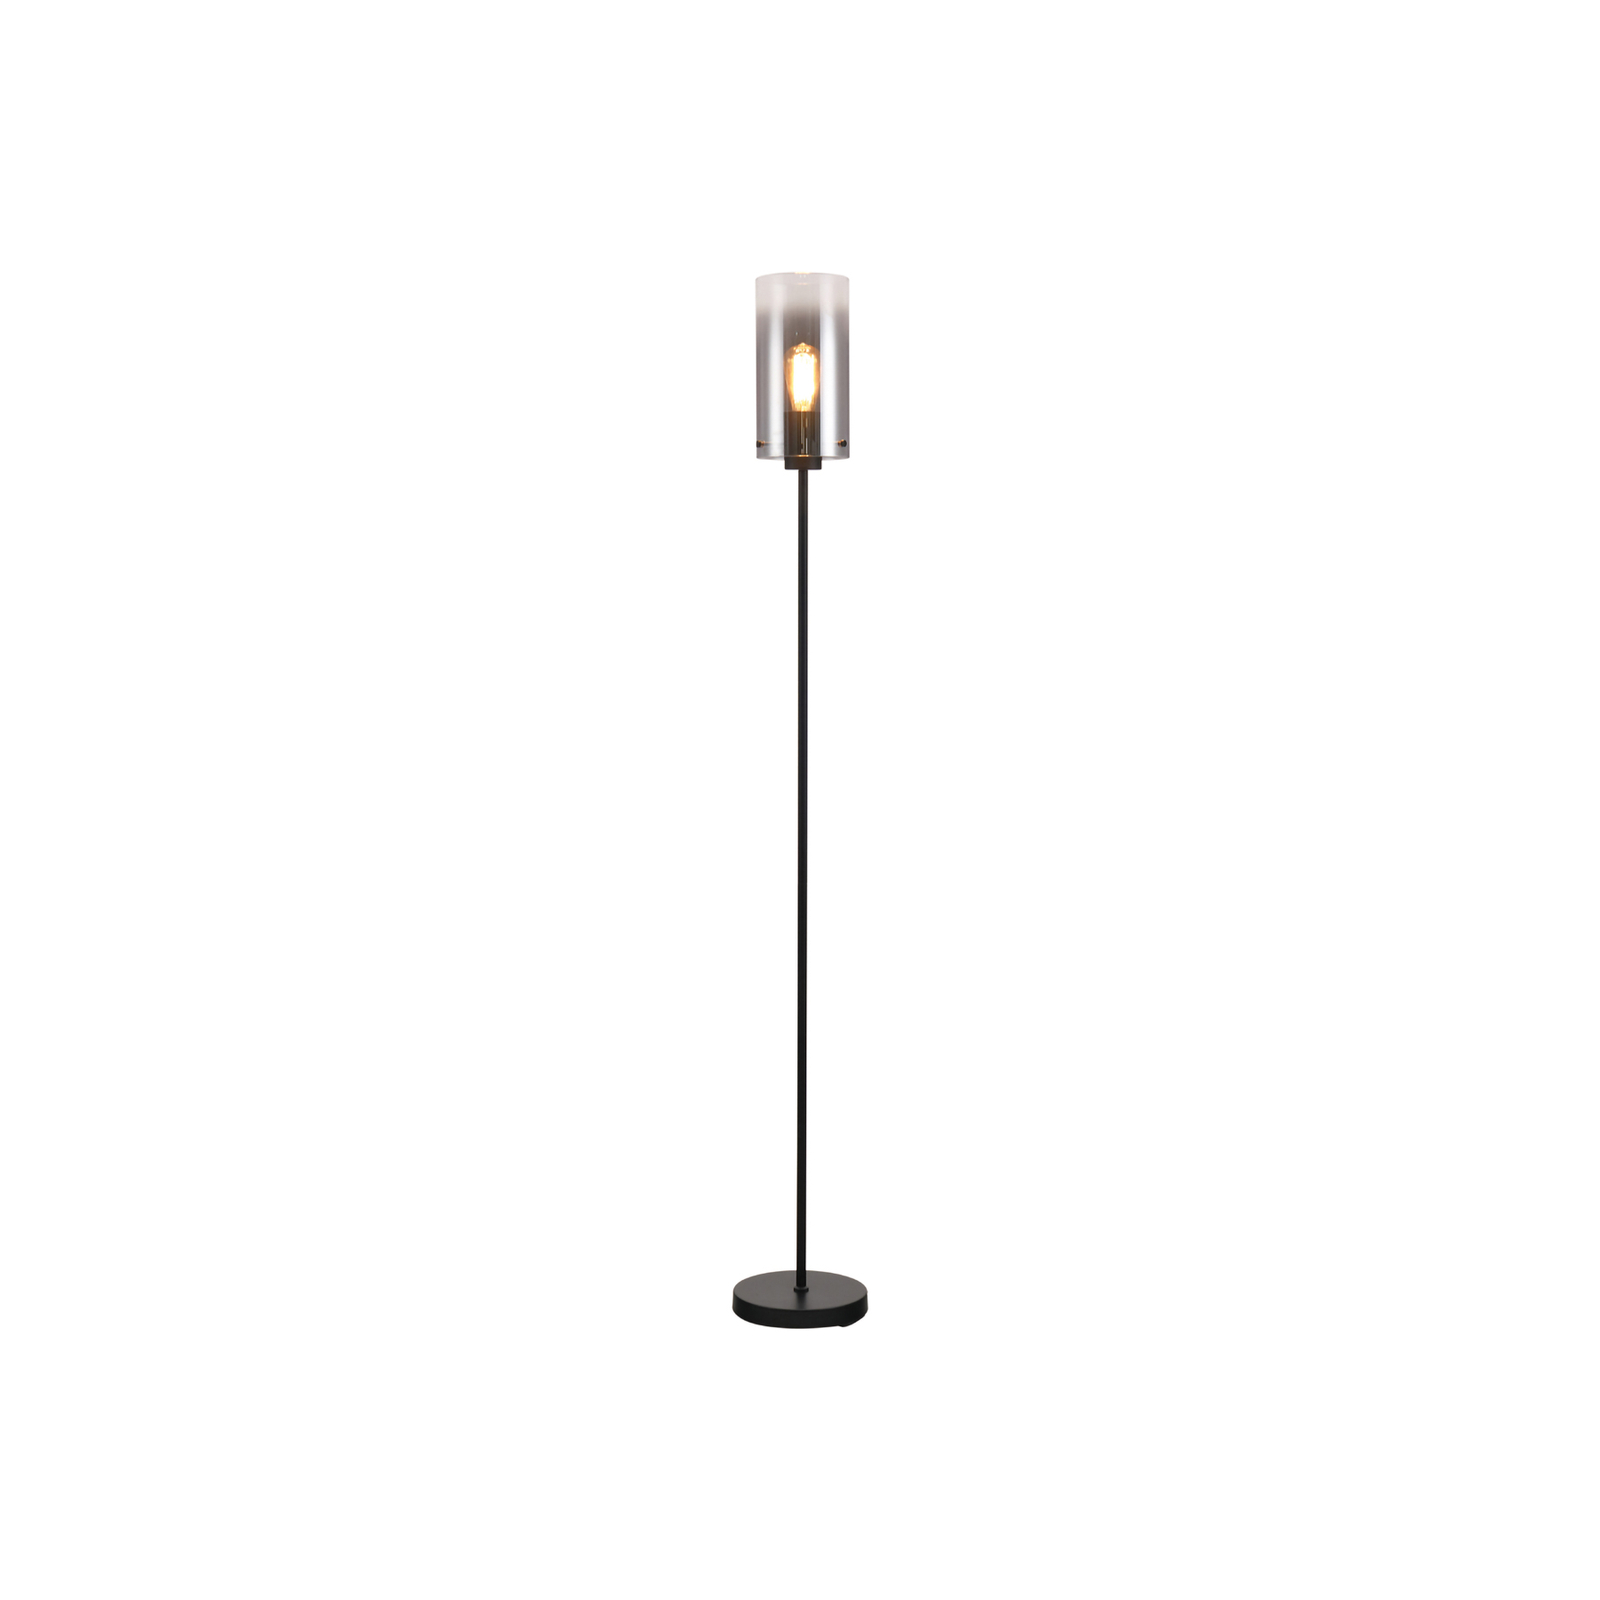 Stehlampe Ventotto, schwarz/rauch, Höhe 165 cm, Metall/Glas